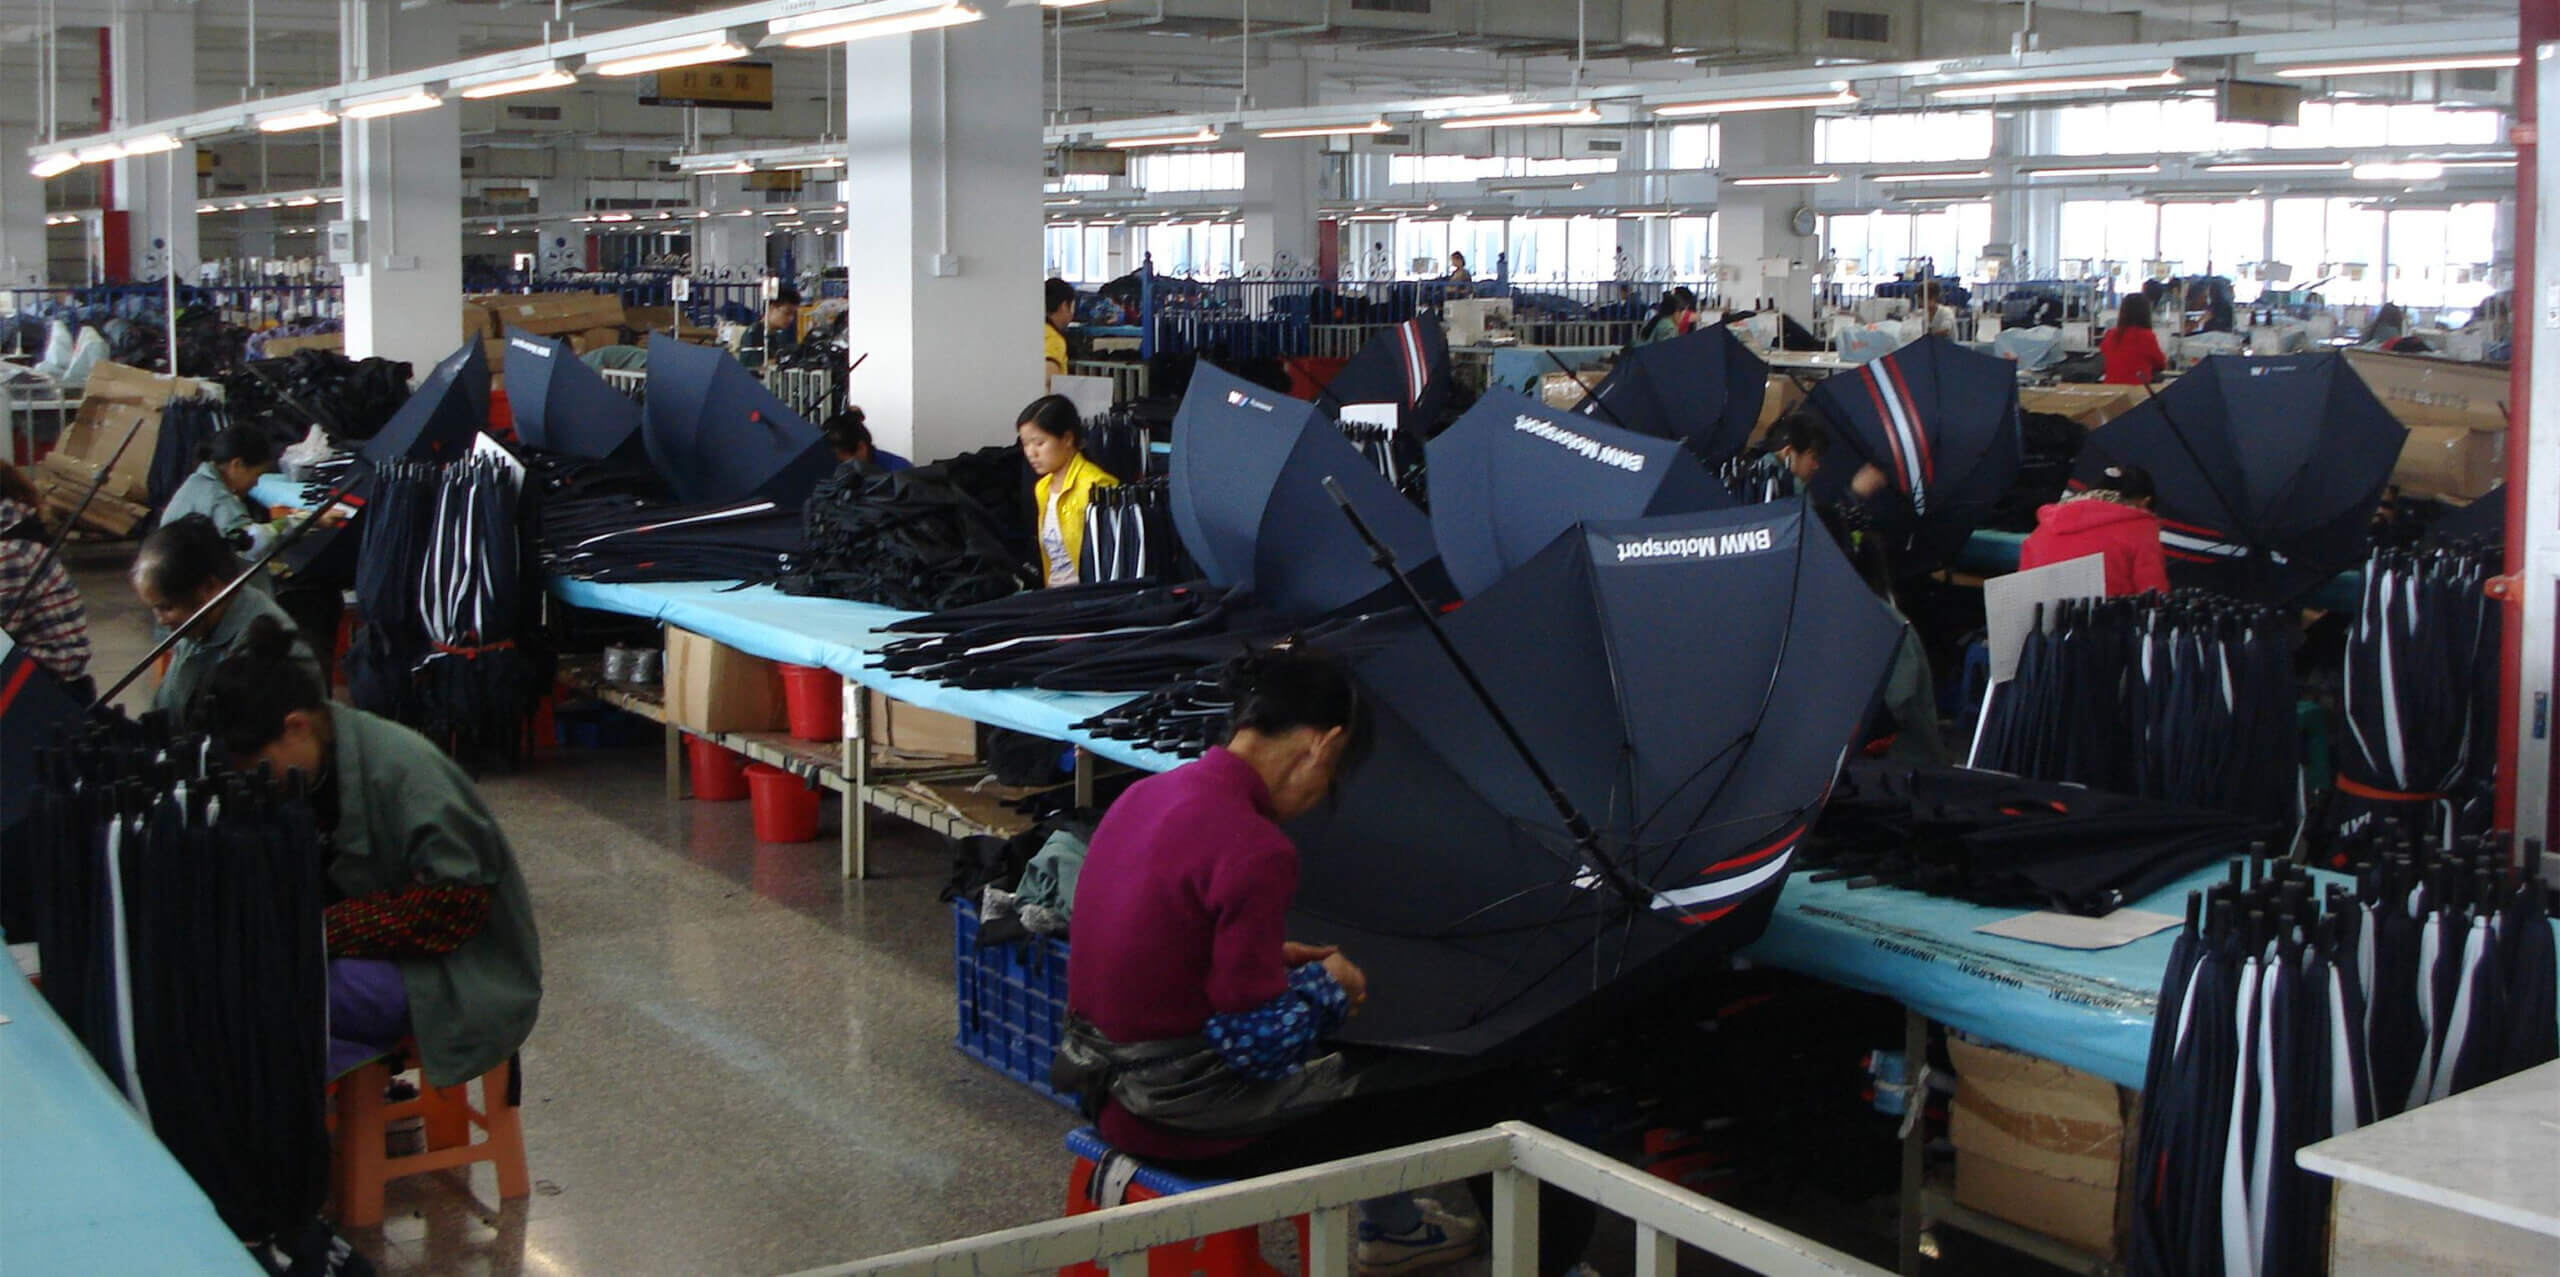 stitching umbrellas-umbrella supplier